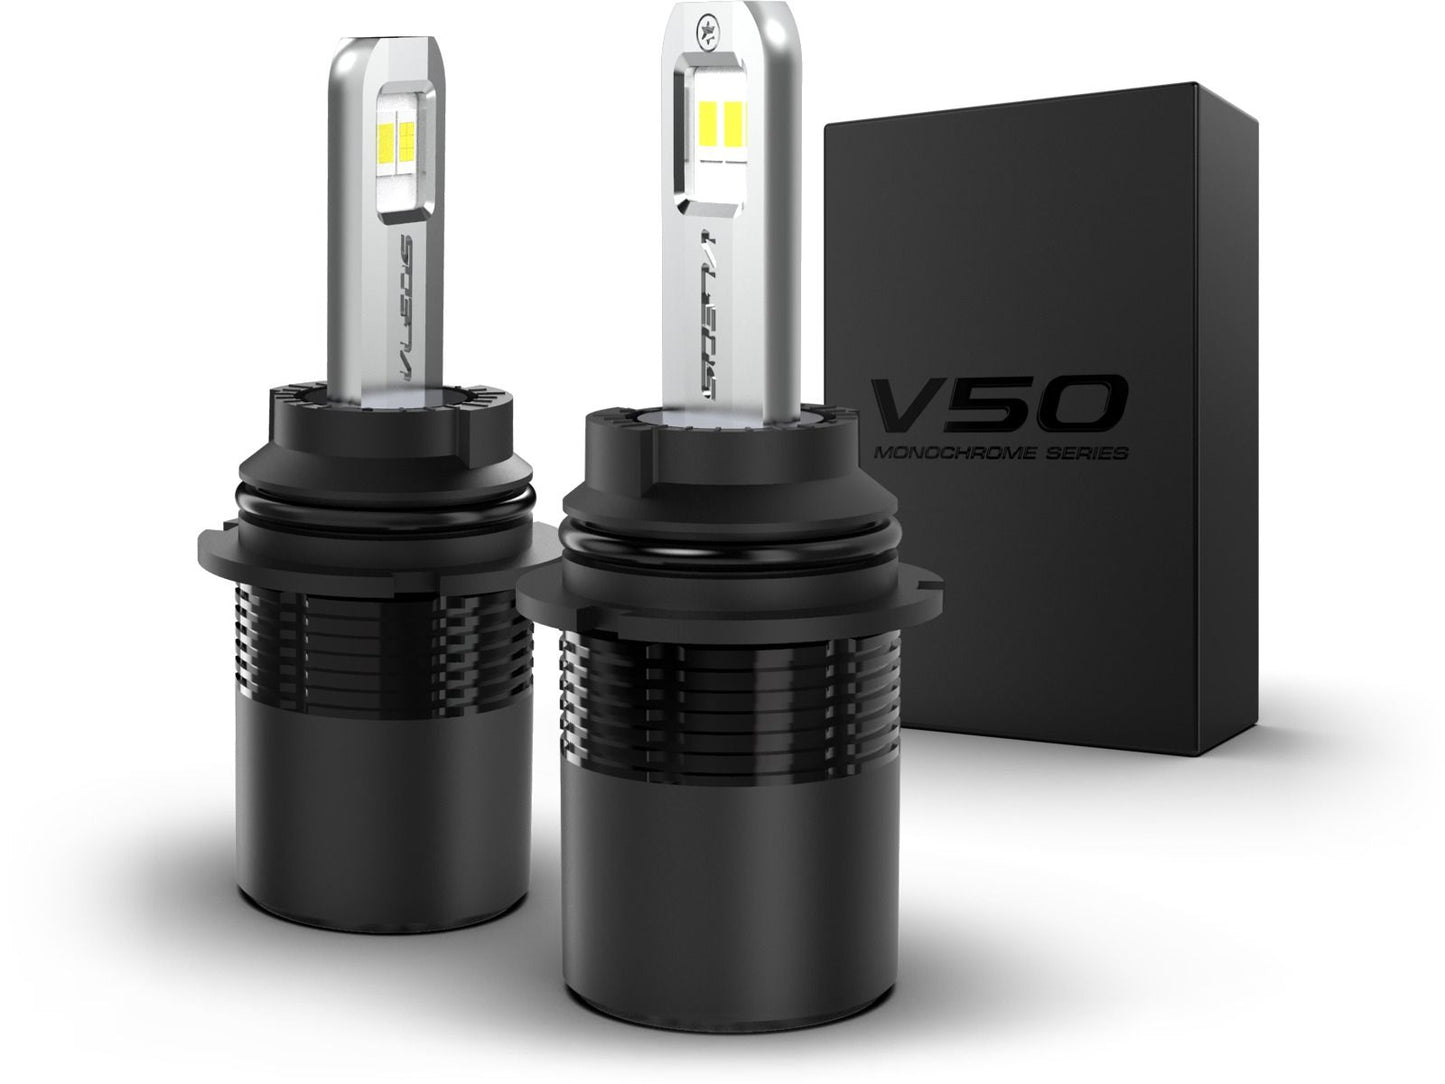 9007: VLEDS V50 Monochrome Series